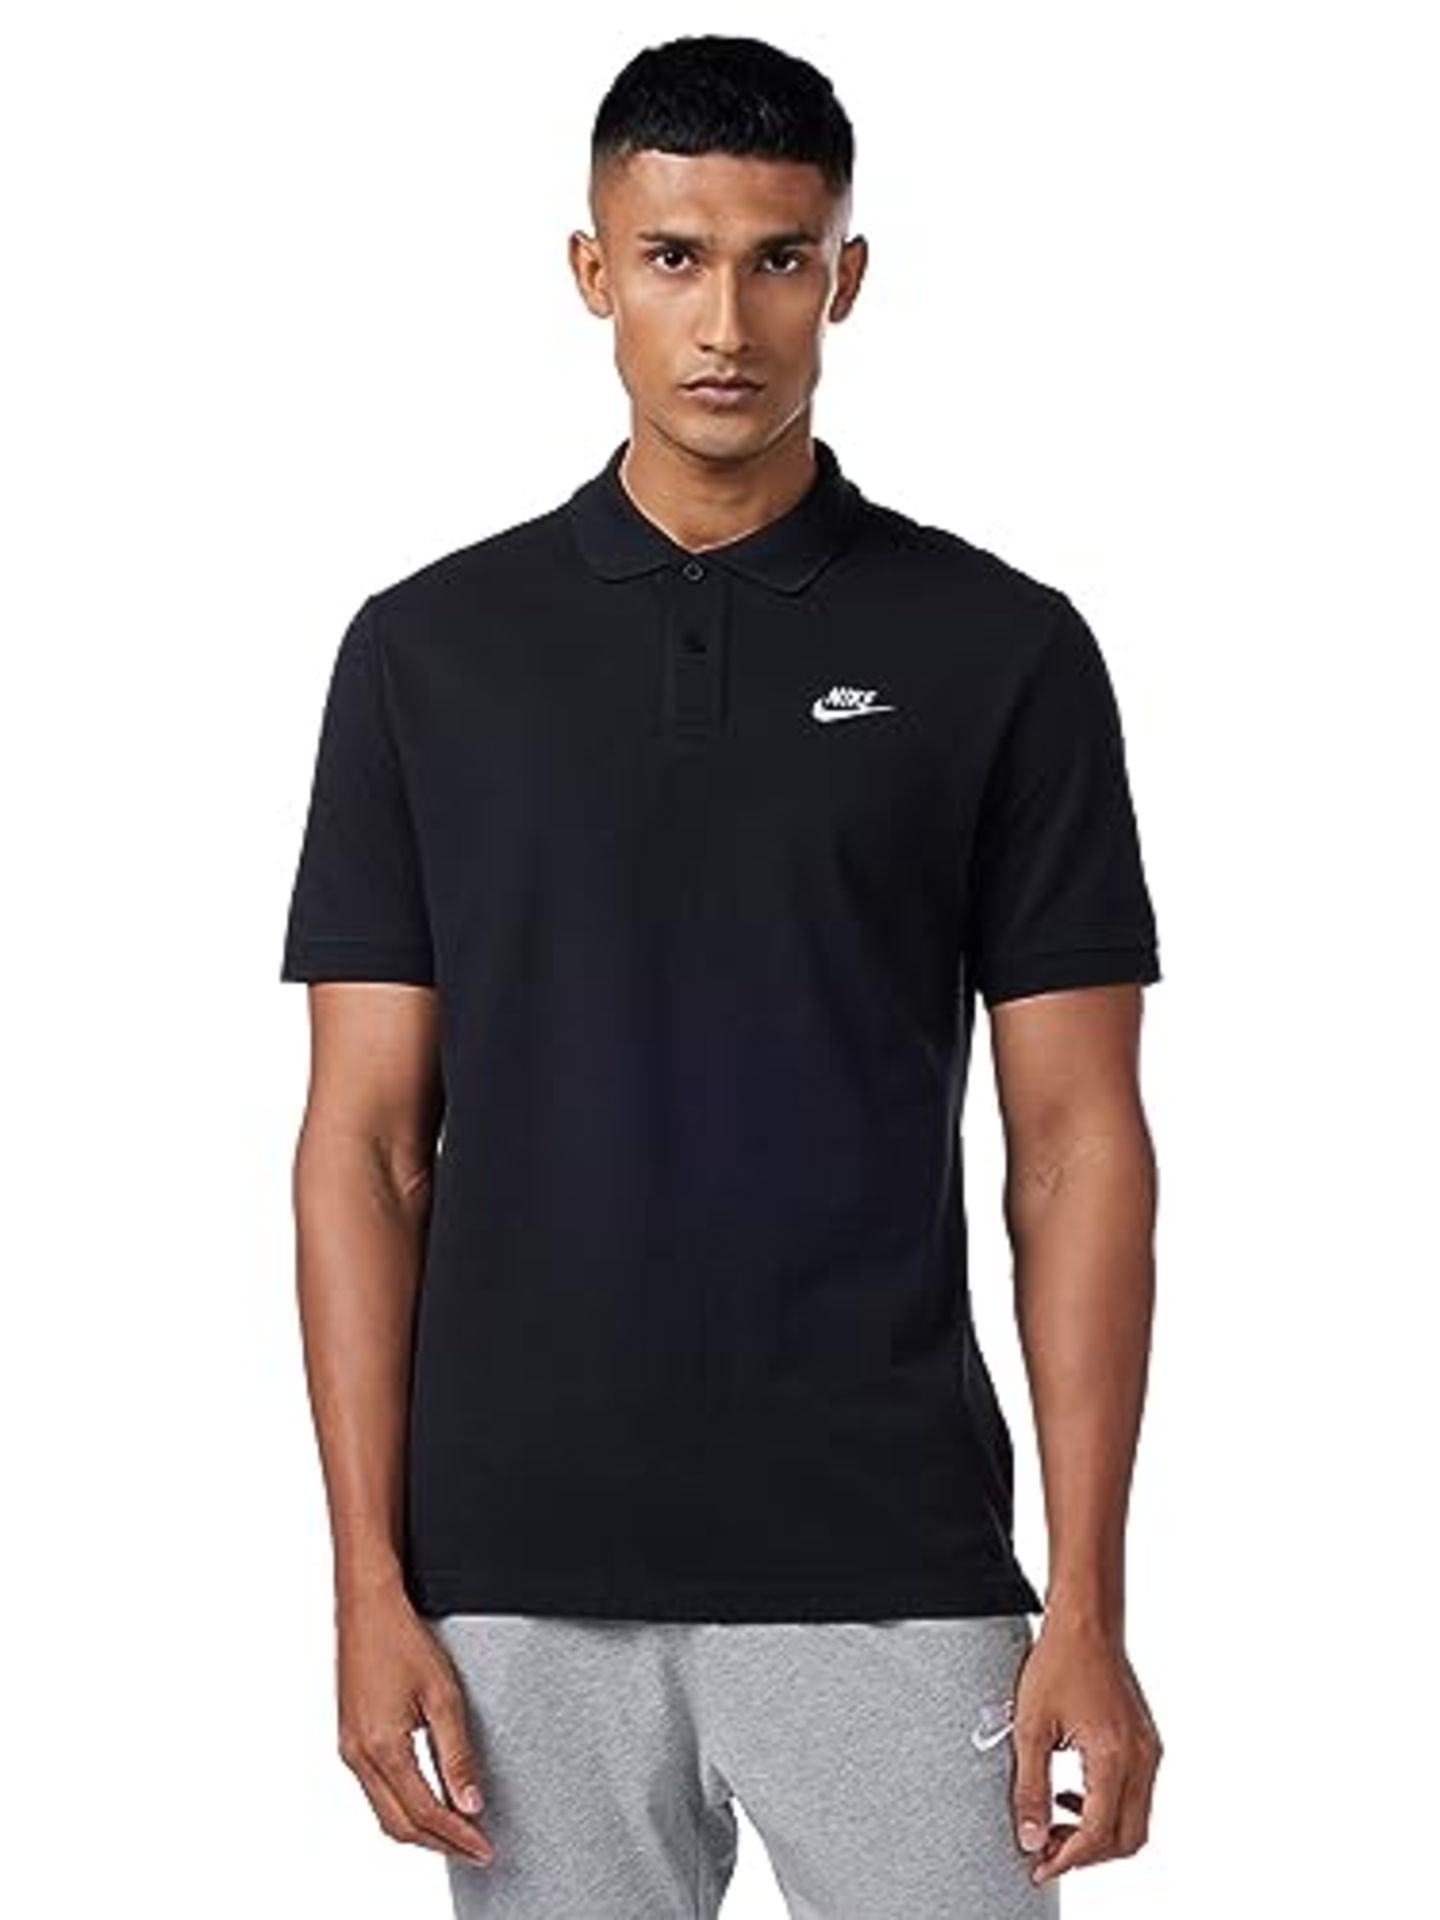 Nike Men's T-shirt, Black/White, L